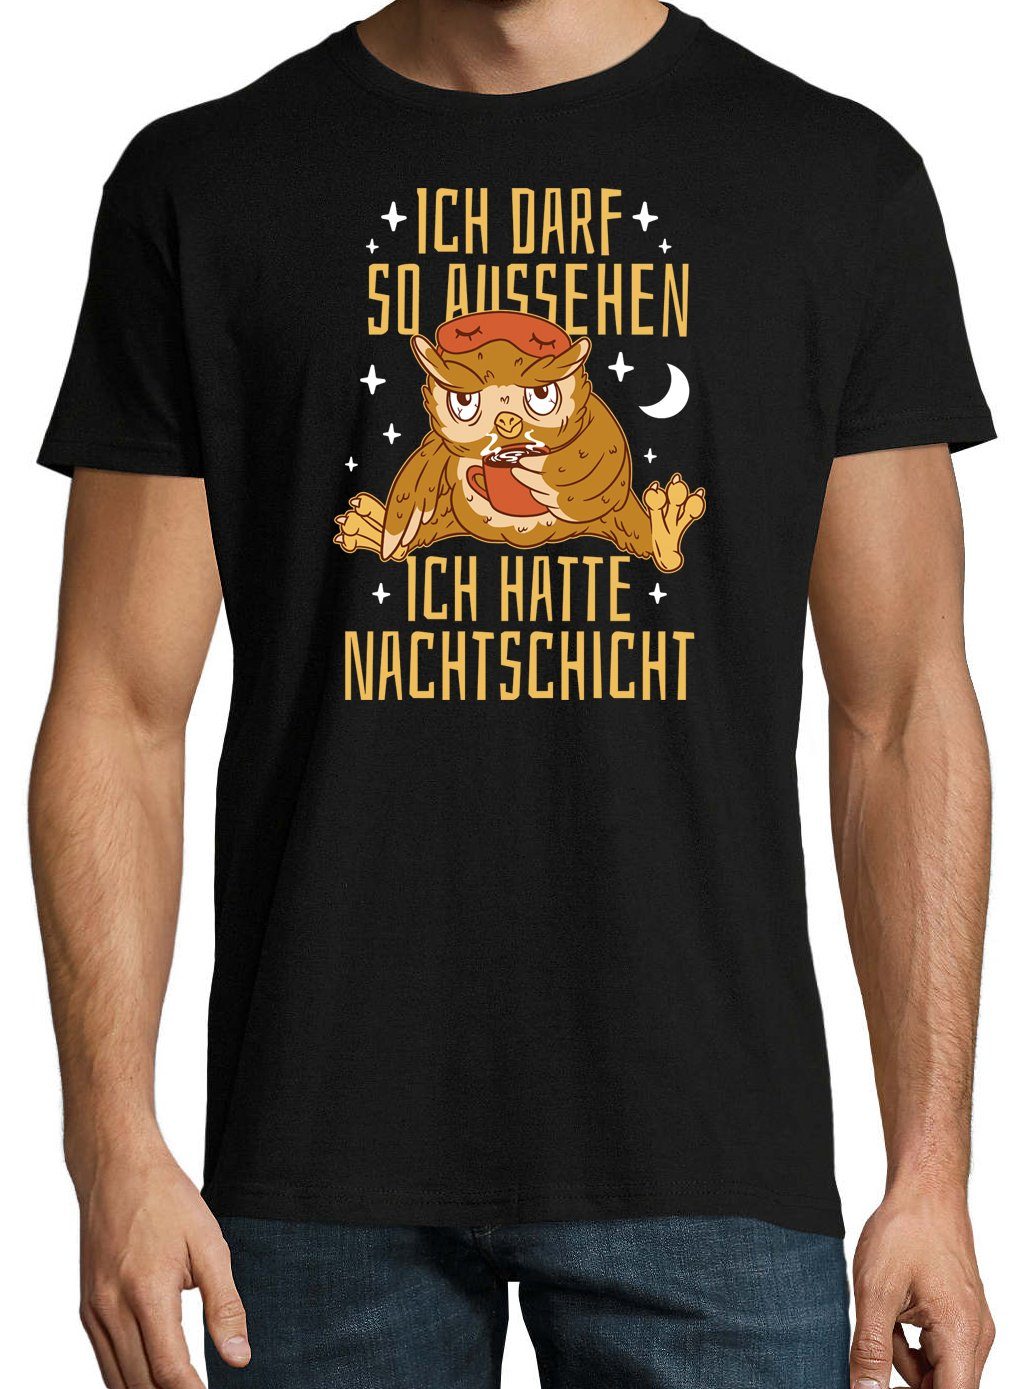 T-Shirt Darf lustigem T-Shirt Logo Aussehen Herren mit und Schwarz Designz Spruch So Youth Aufdruck NACHTSCHICHT Ich